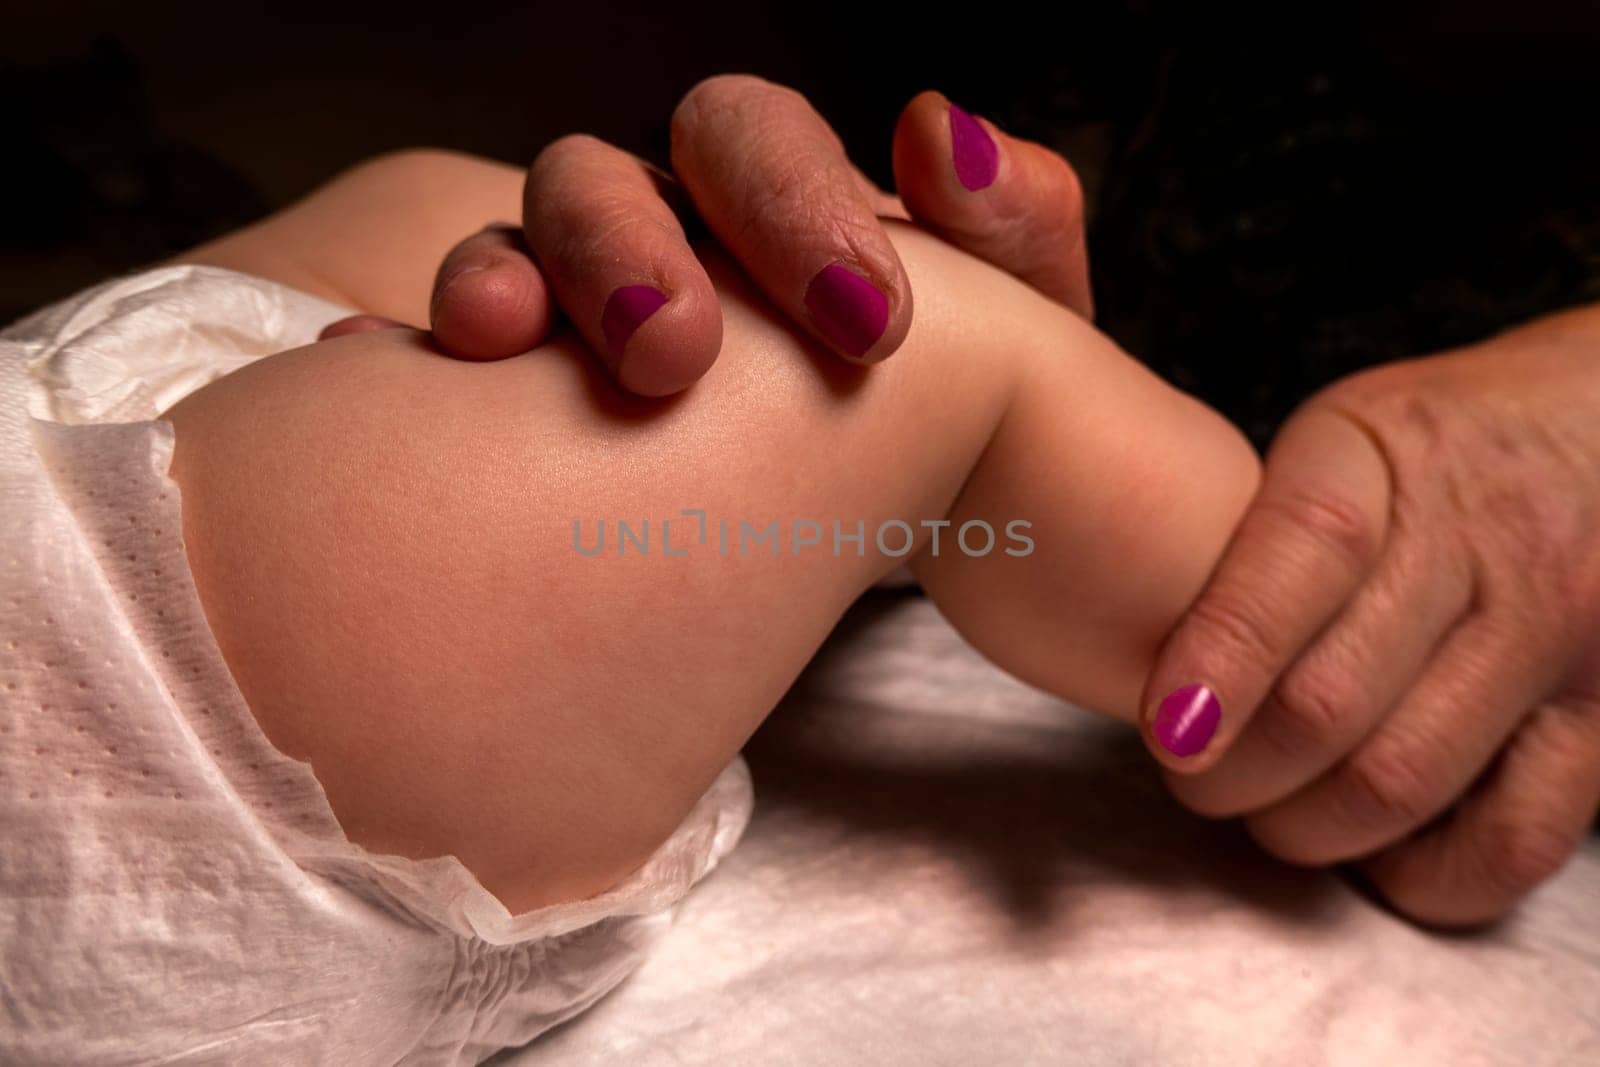 baby feet. massage. The hands of an adult - a mother or a masseur - massage a little girl. Dark background